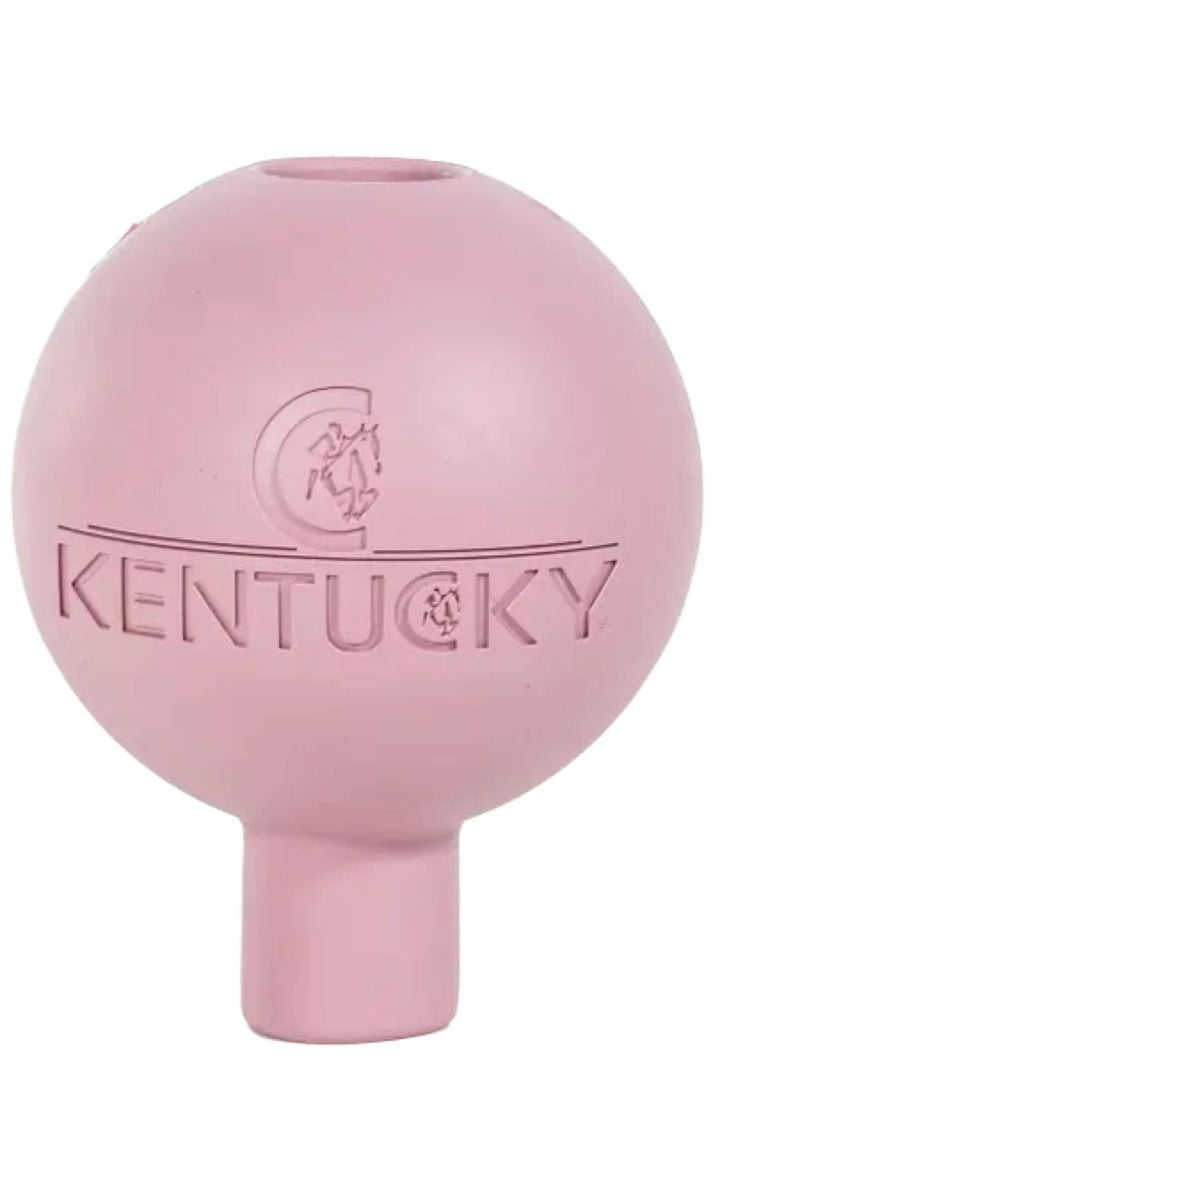 Kentucky Schutzball Rubber Old Rose